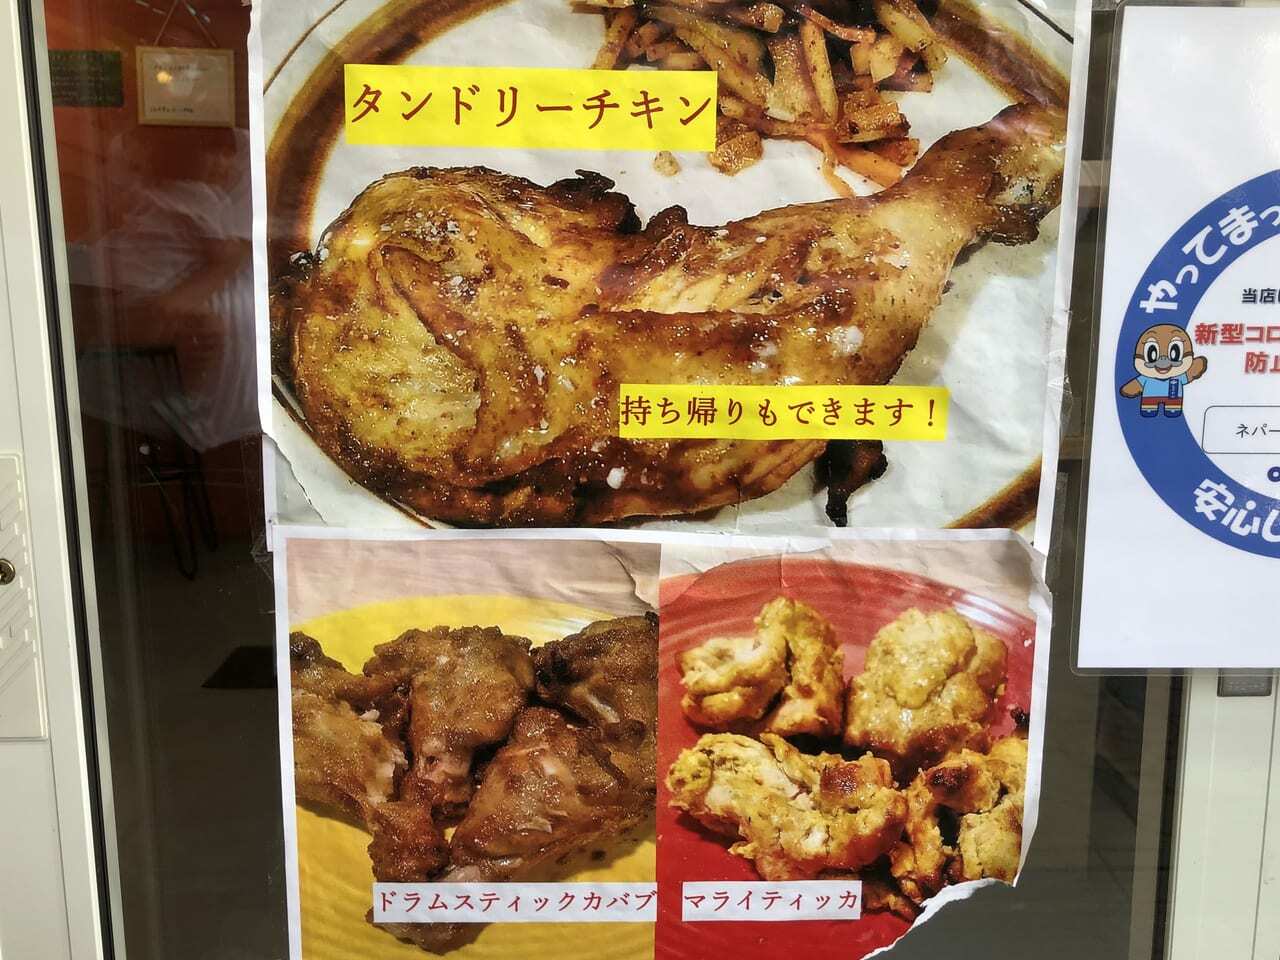 チキン料理もたくさん種類が。